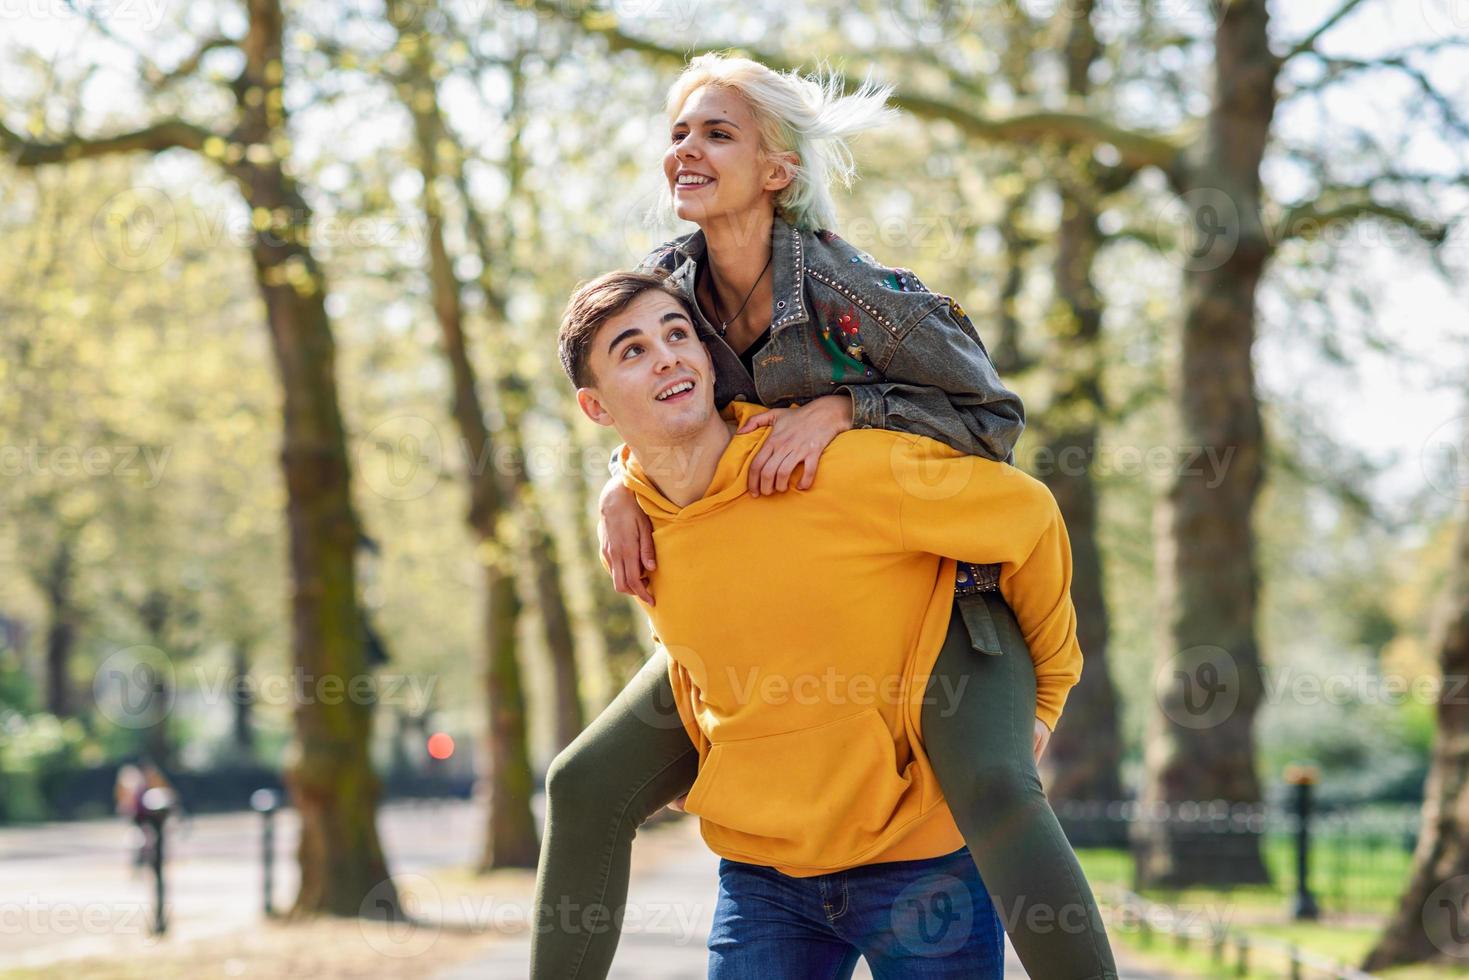 divertida pareja en un parque urbano. novio llevando a su novia a cuestas. foto